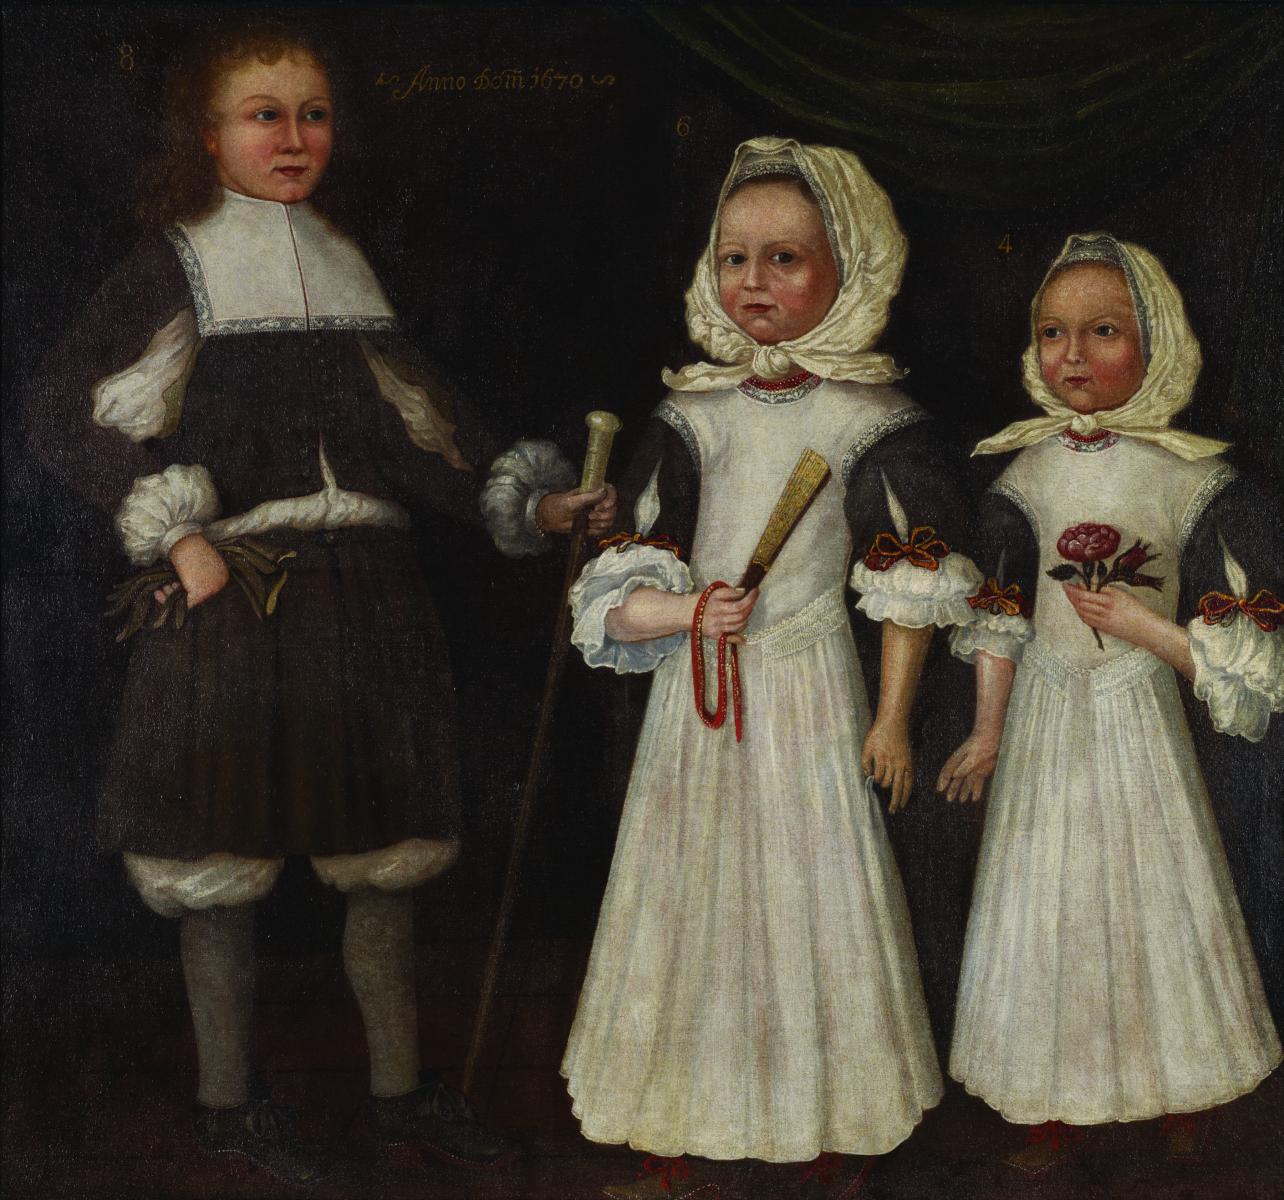 The Freake-Gibbs Painter, David, Joanna, and Abigail Mason, 1670